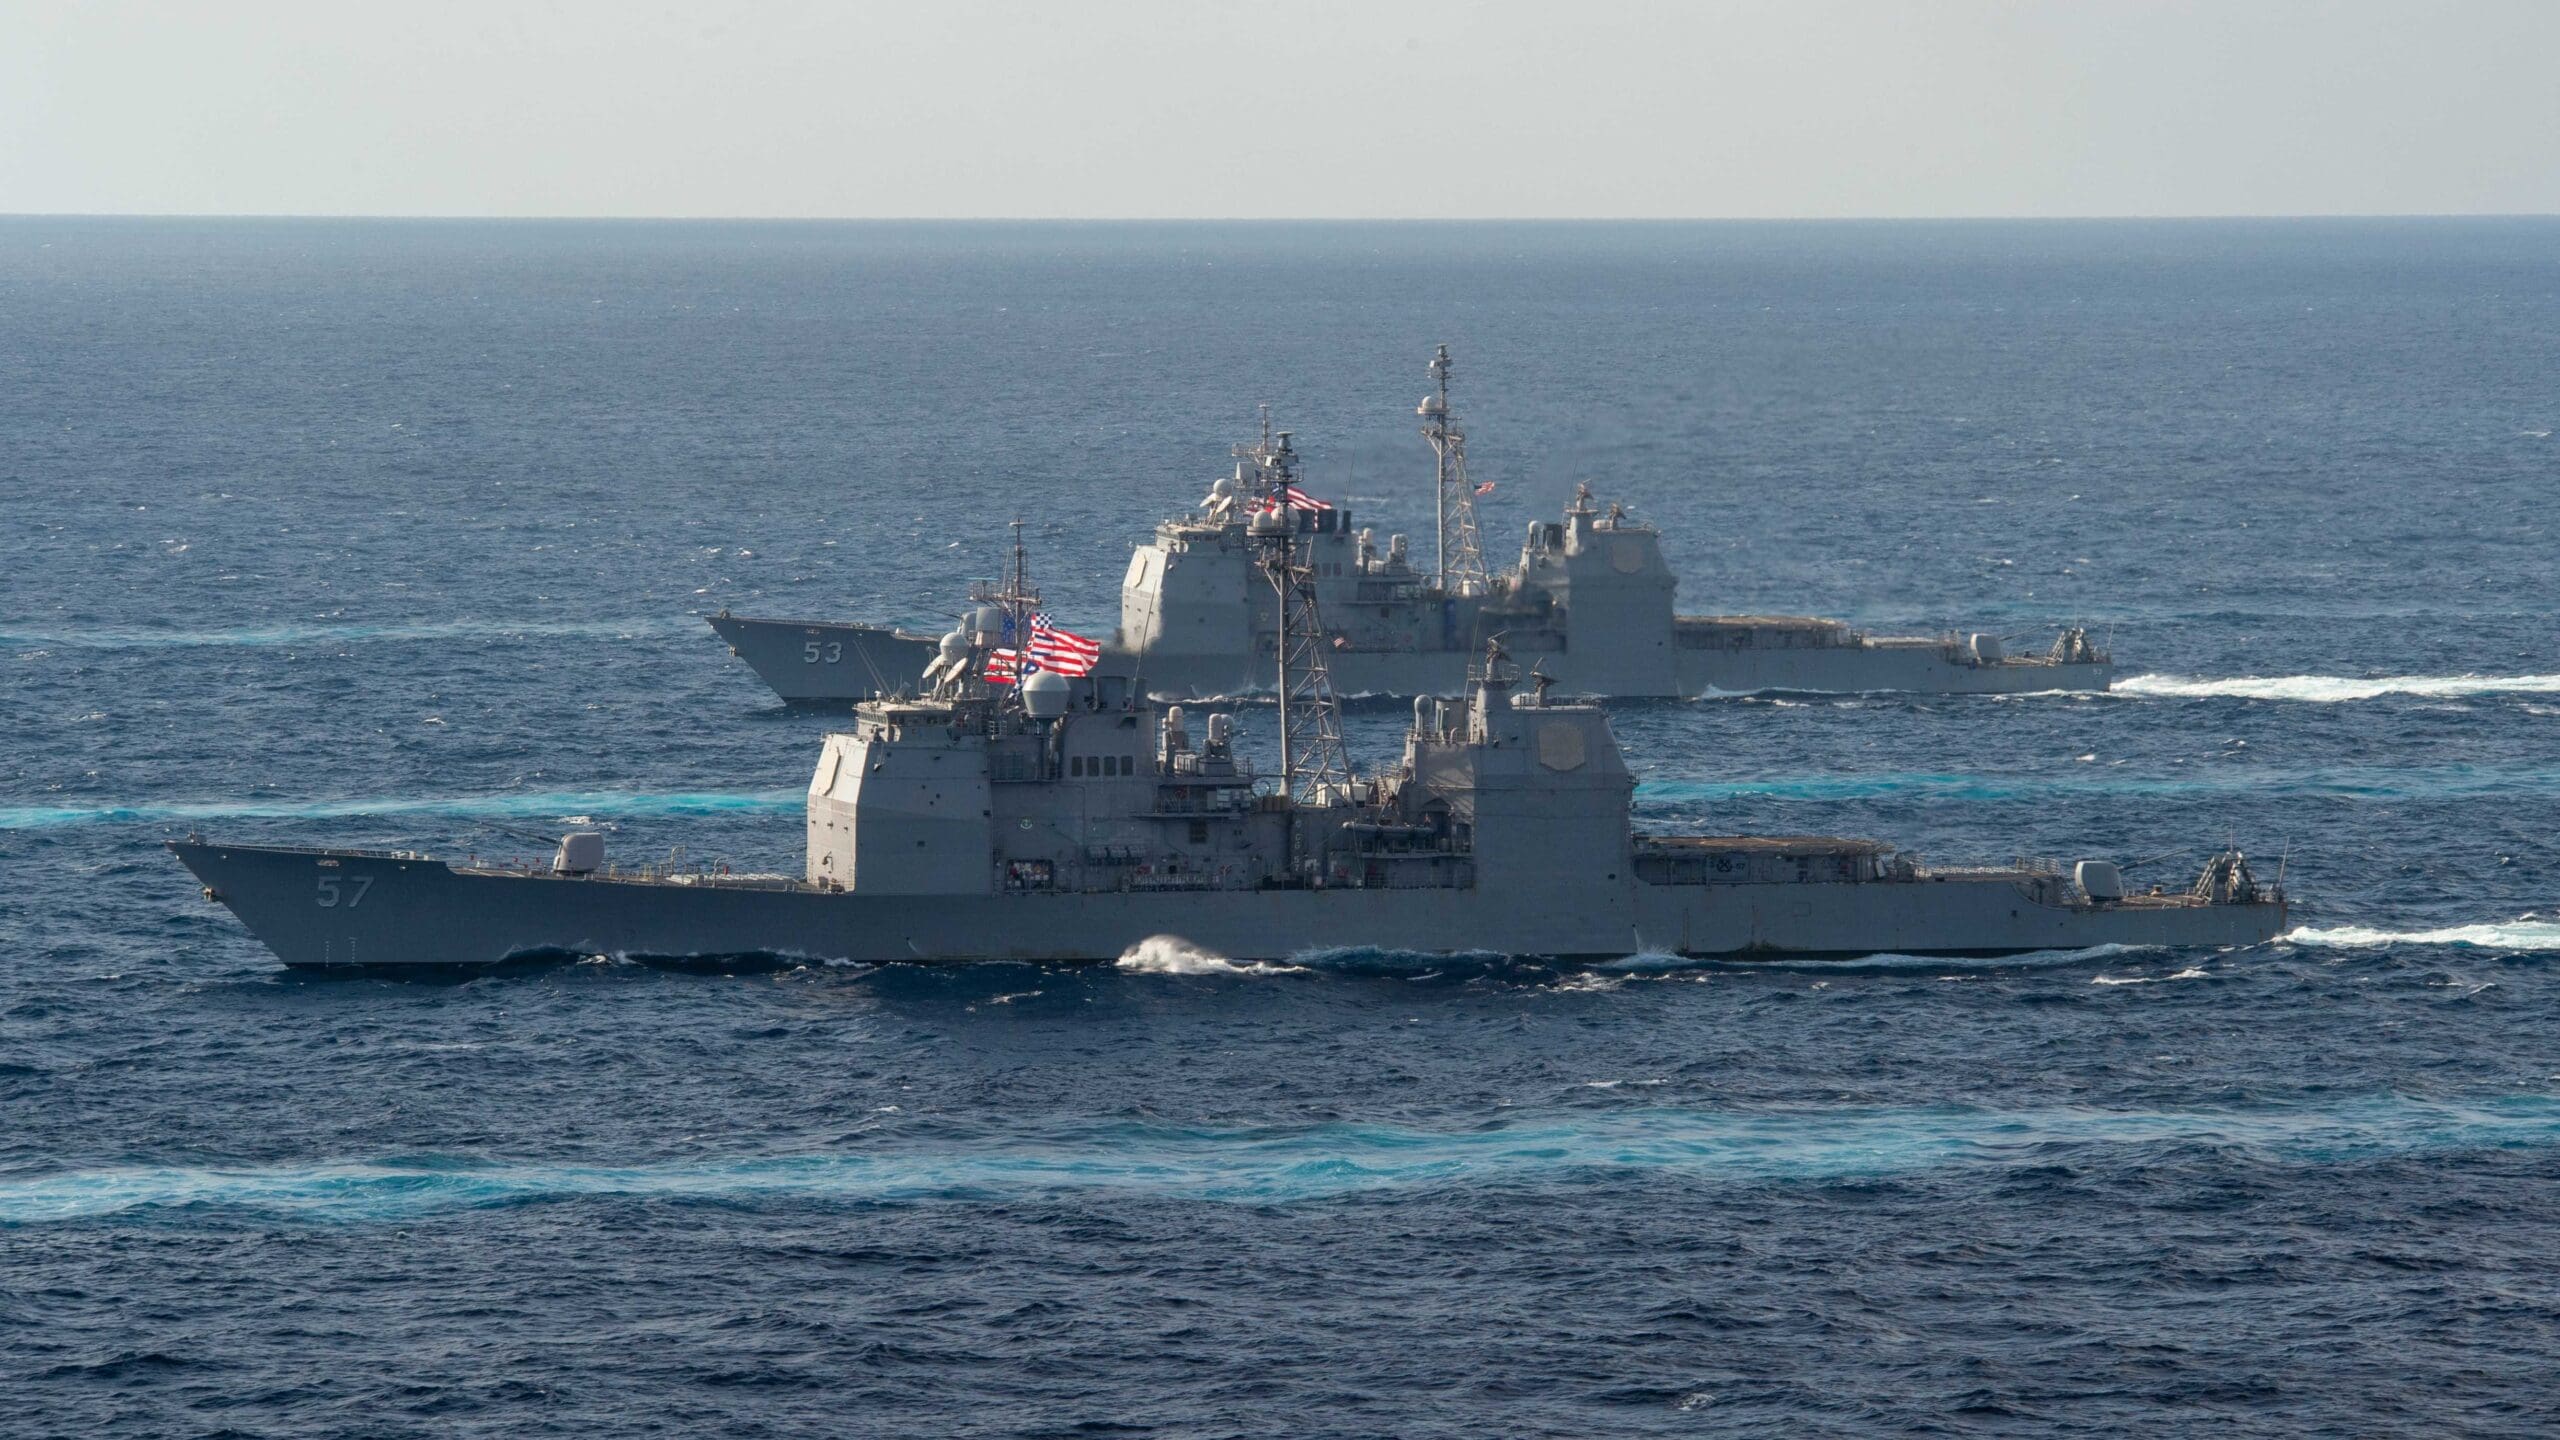 Con più di 30 anni di servizio, la Marina degli Stati Uniti si prepara a ritirare le ultime tredici corvette missilistiche di classe Ticonderoga.